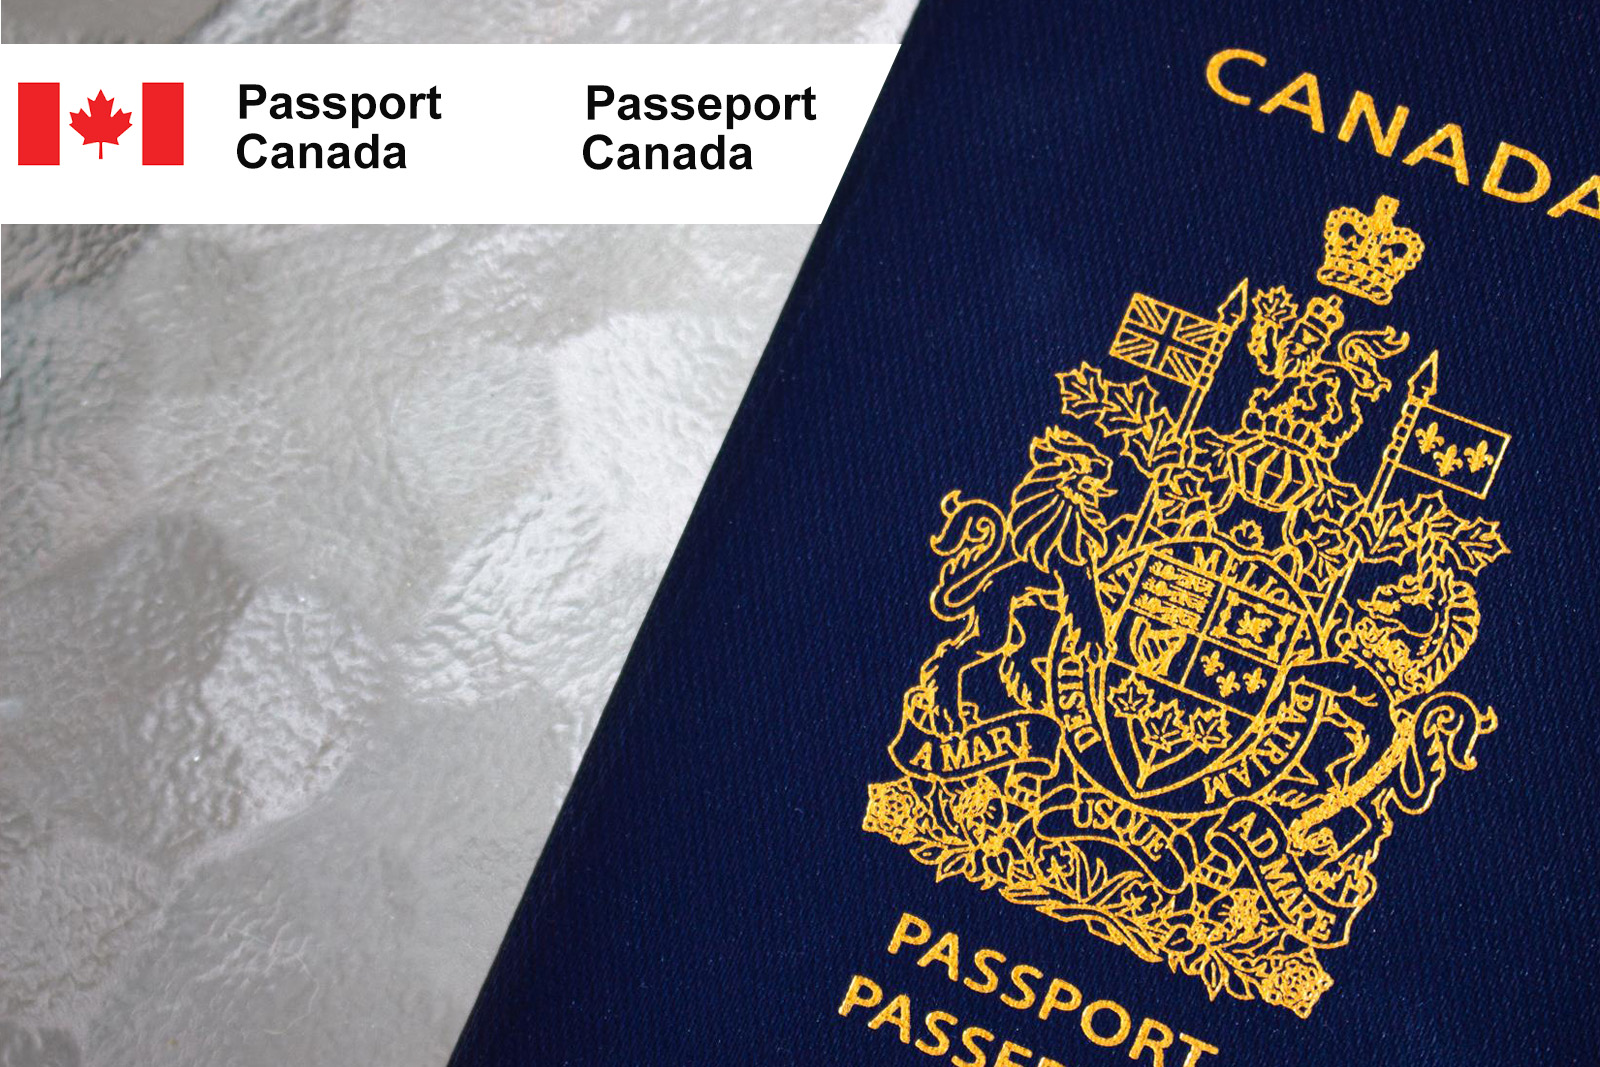 Passport Canada